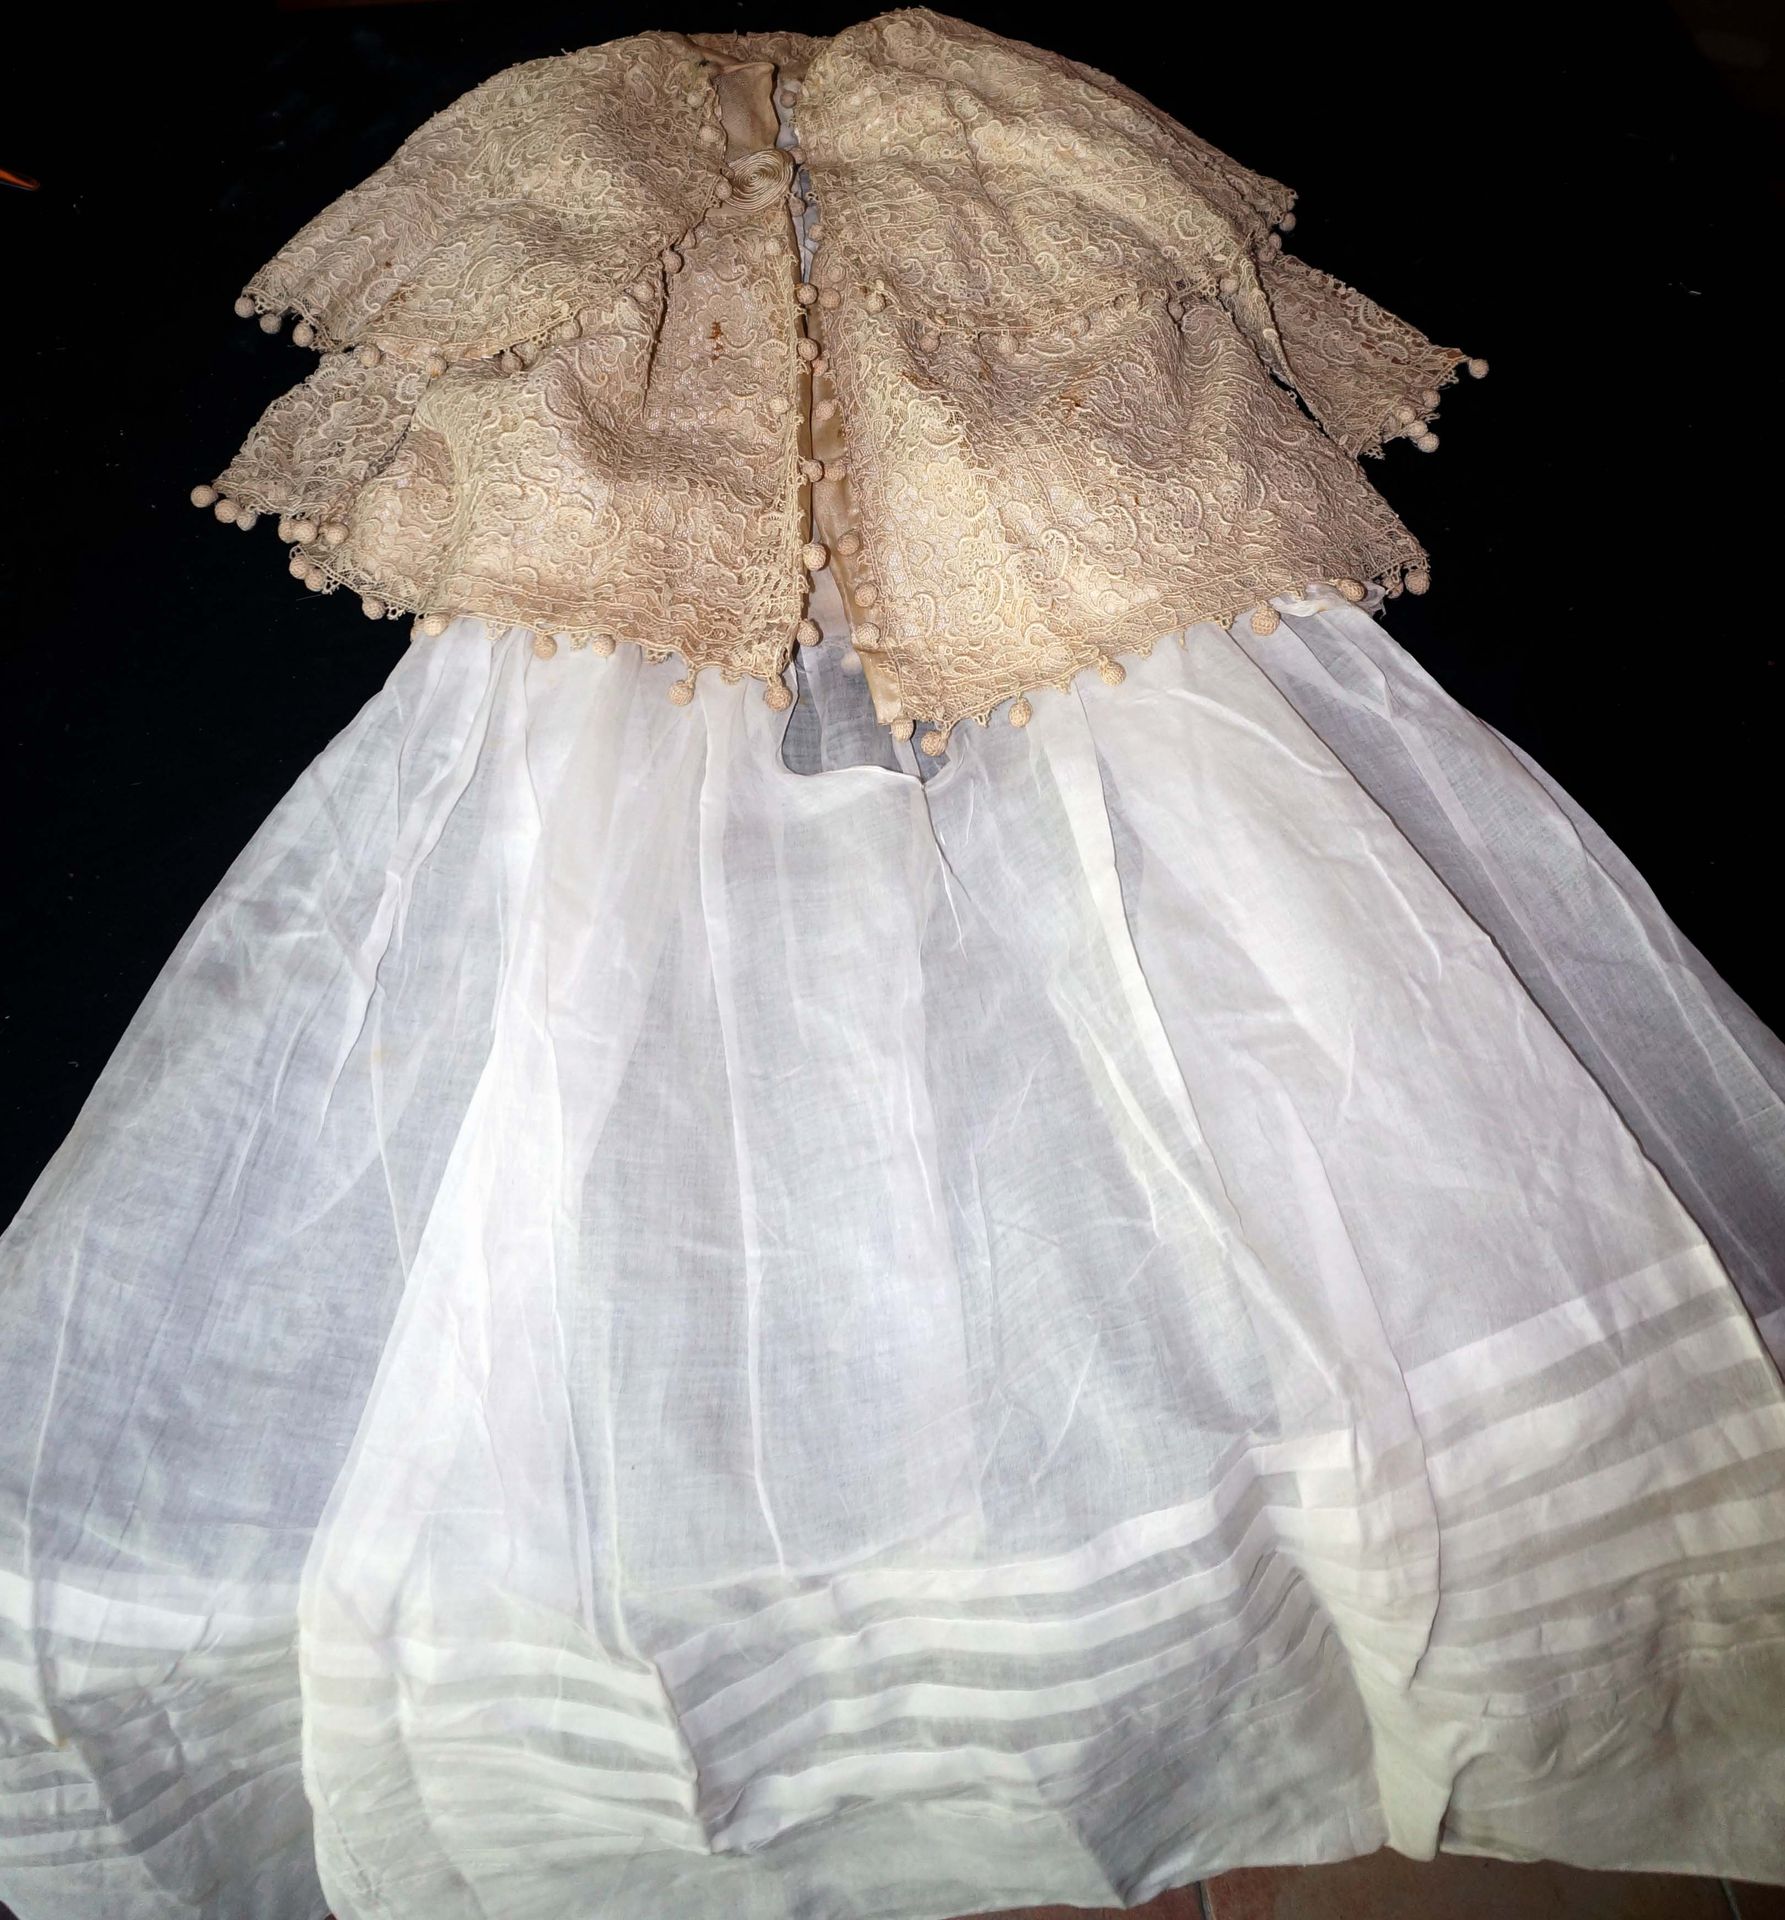 Null 套装包括薄纱连衣裙和刺绣花边长裙，以丝绸为衬里。1880/1900年期间